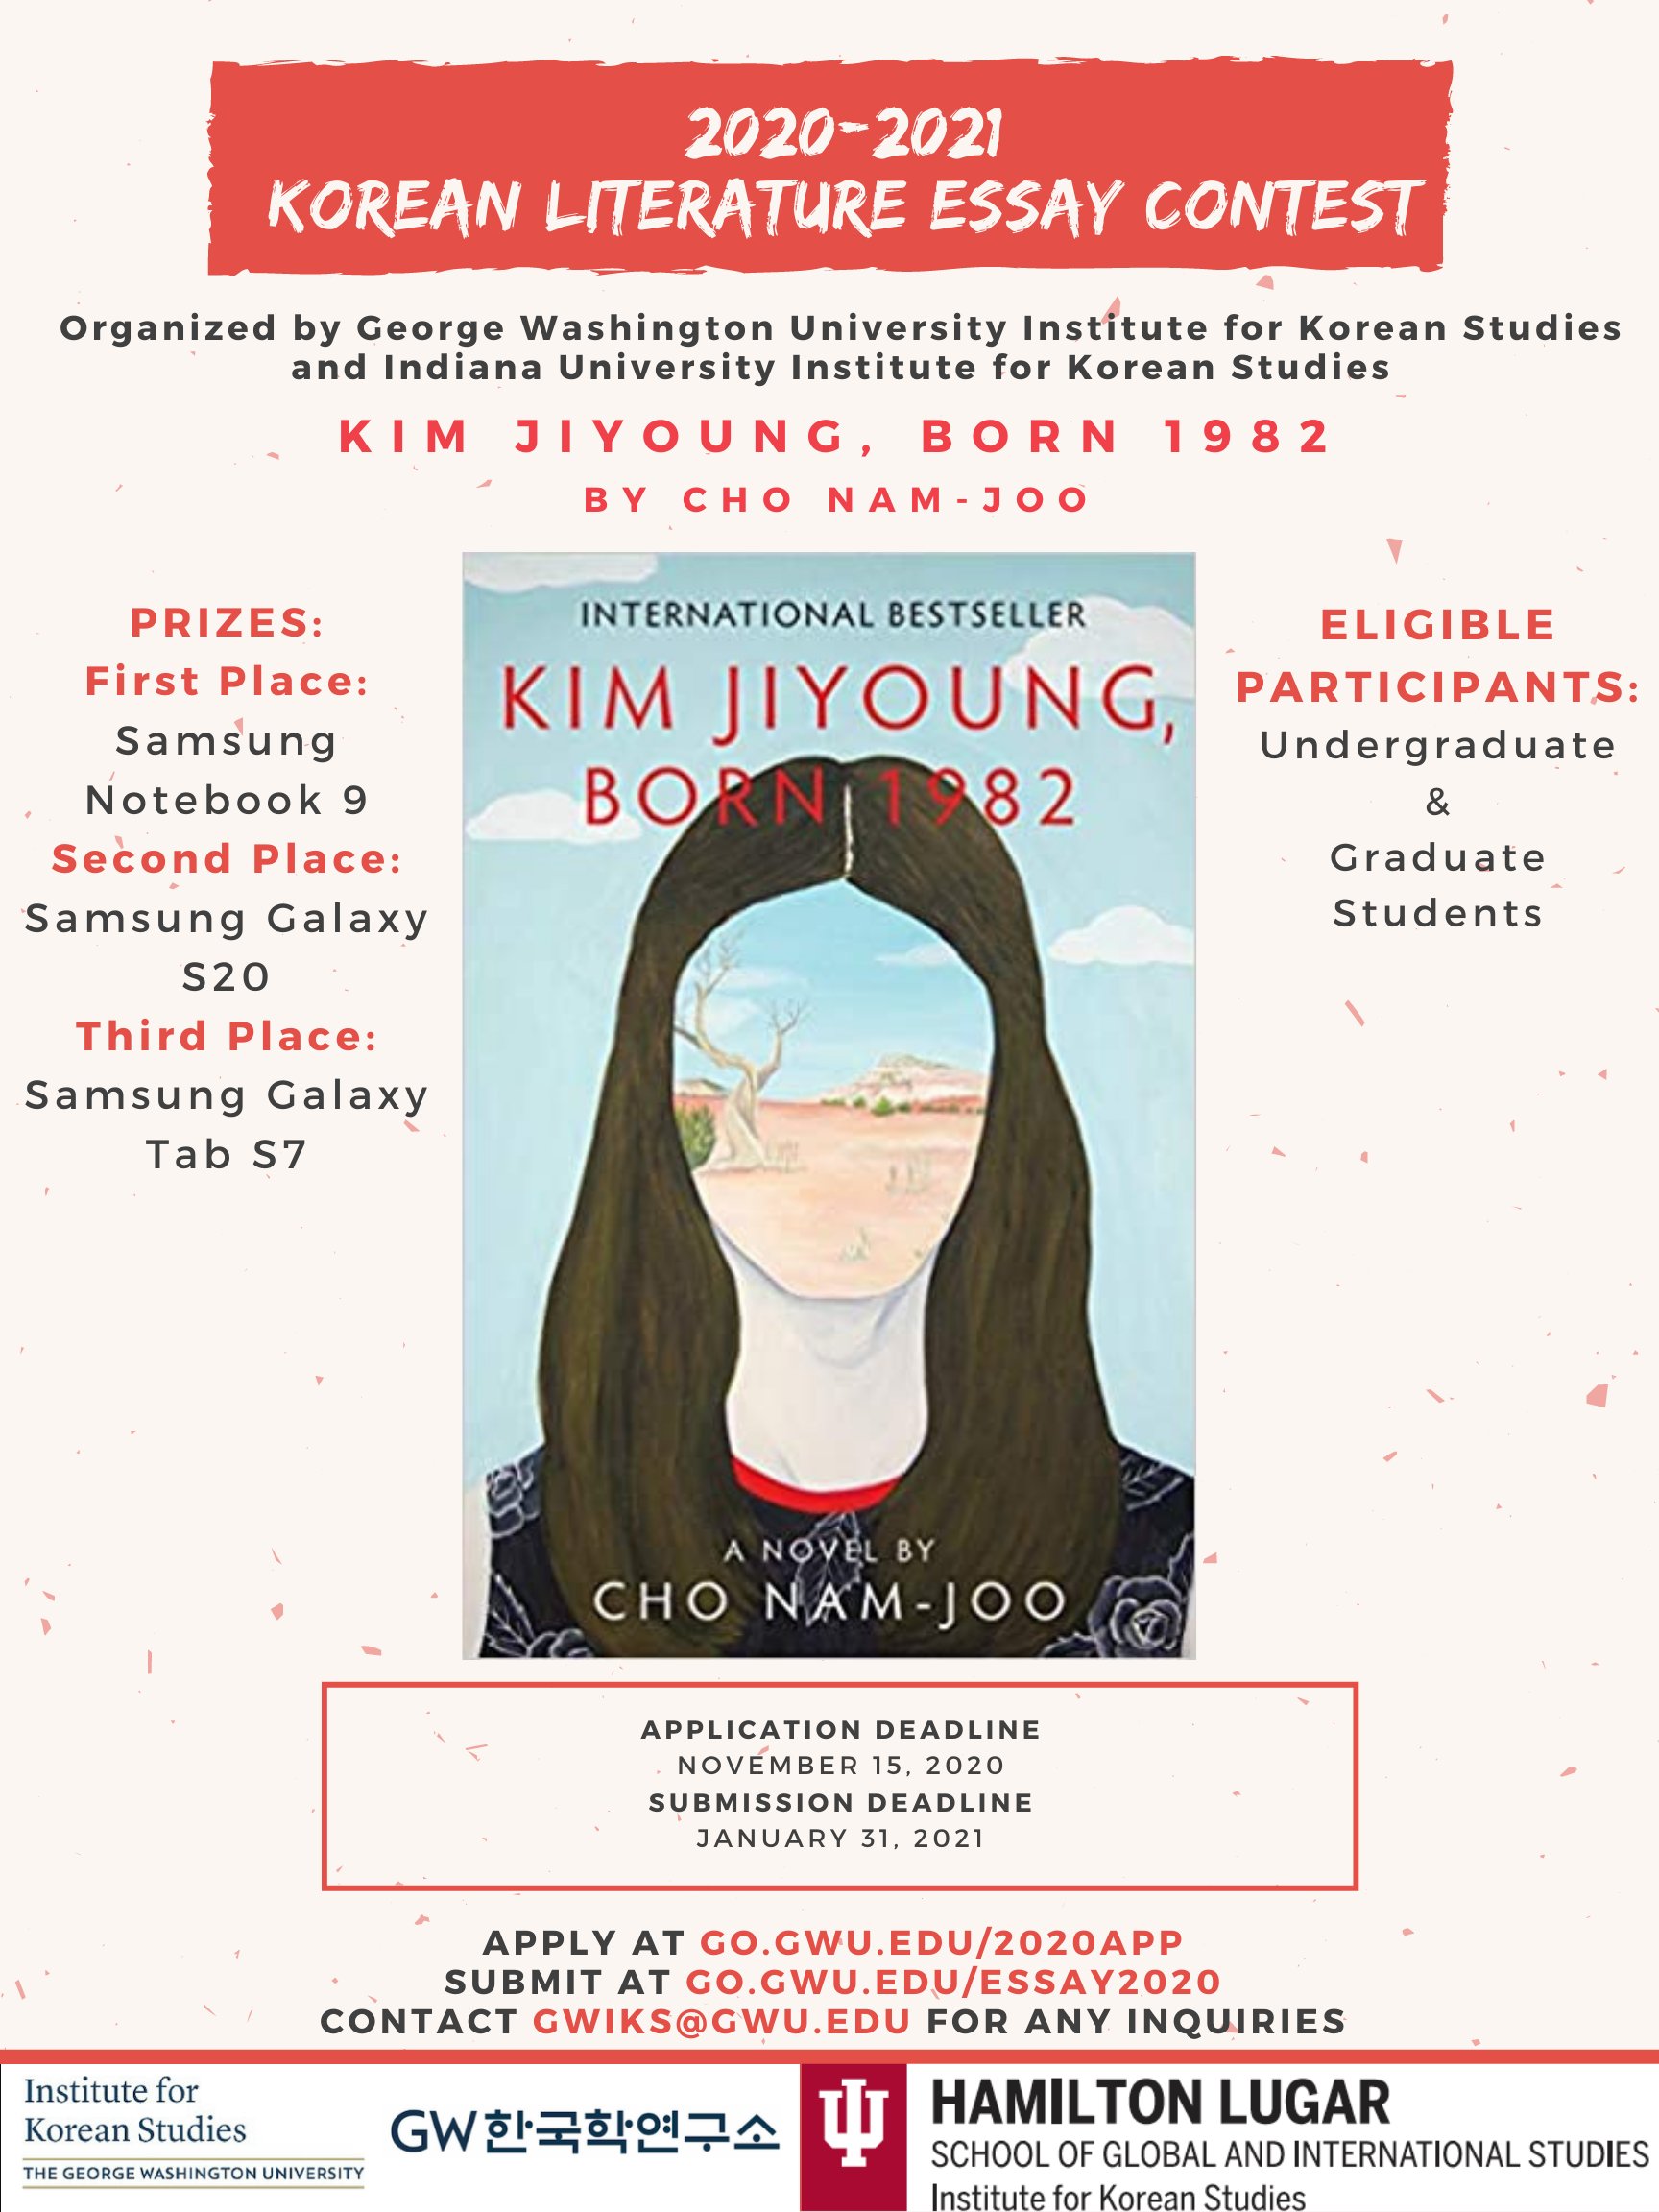 Korean Literature Essay Contest Announcement